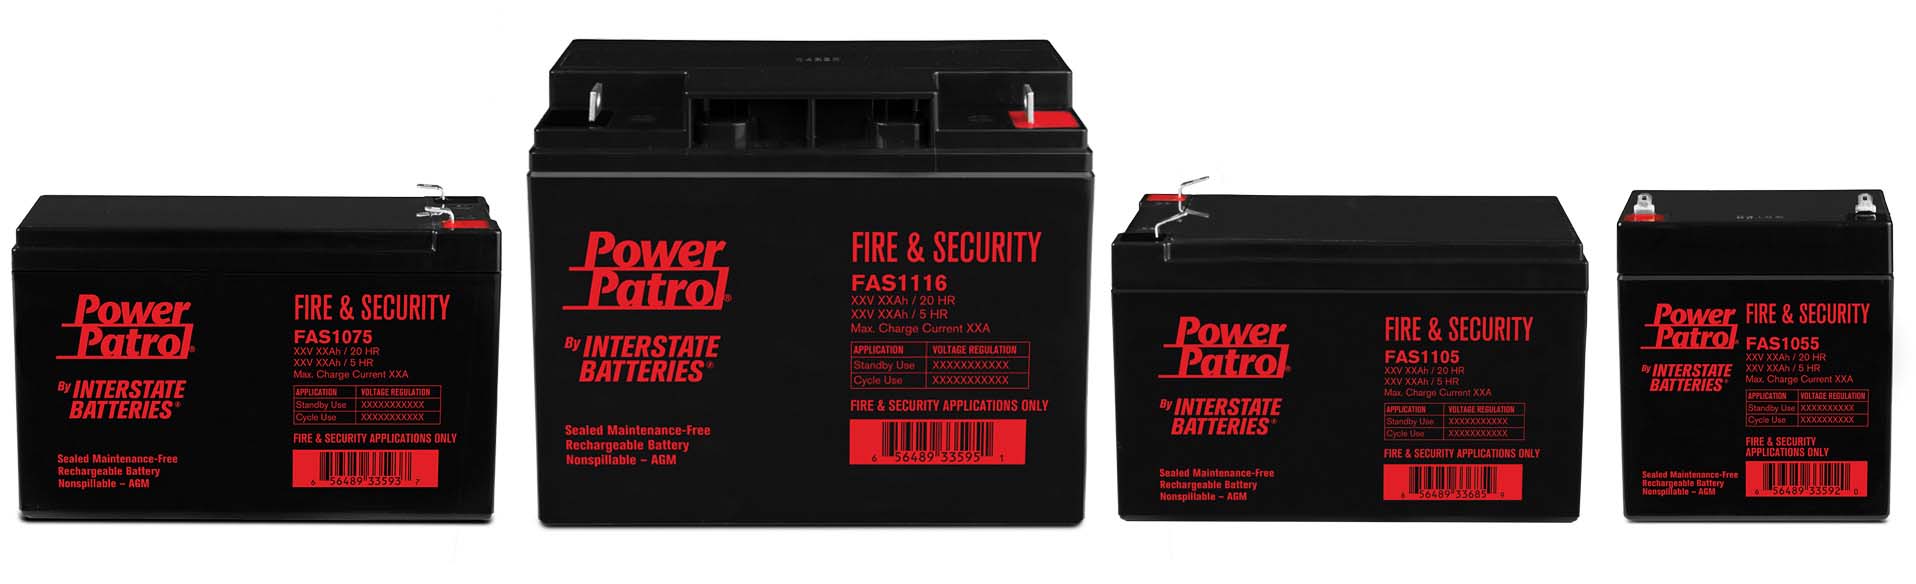 Power Patrol batteries